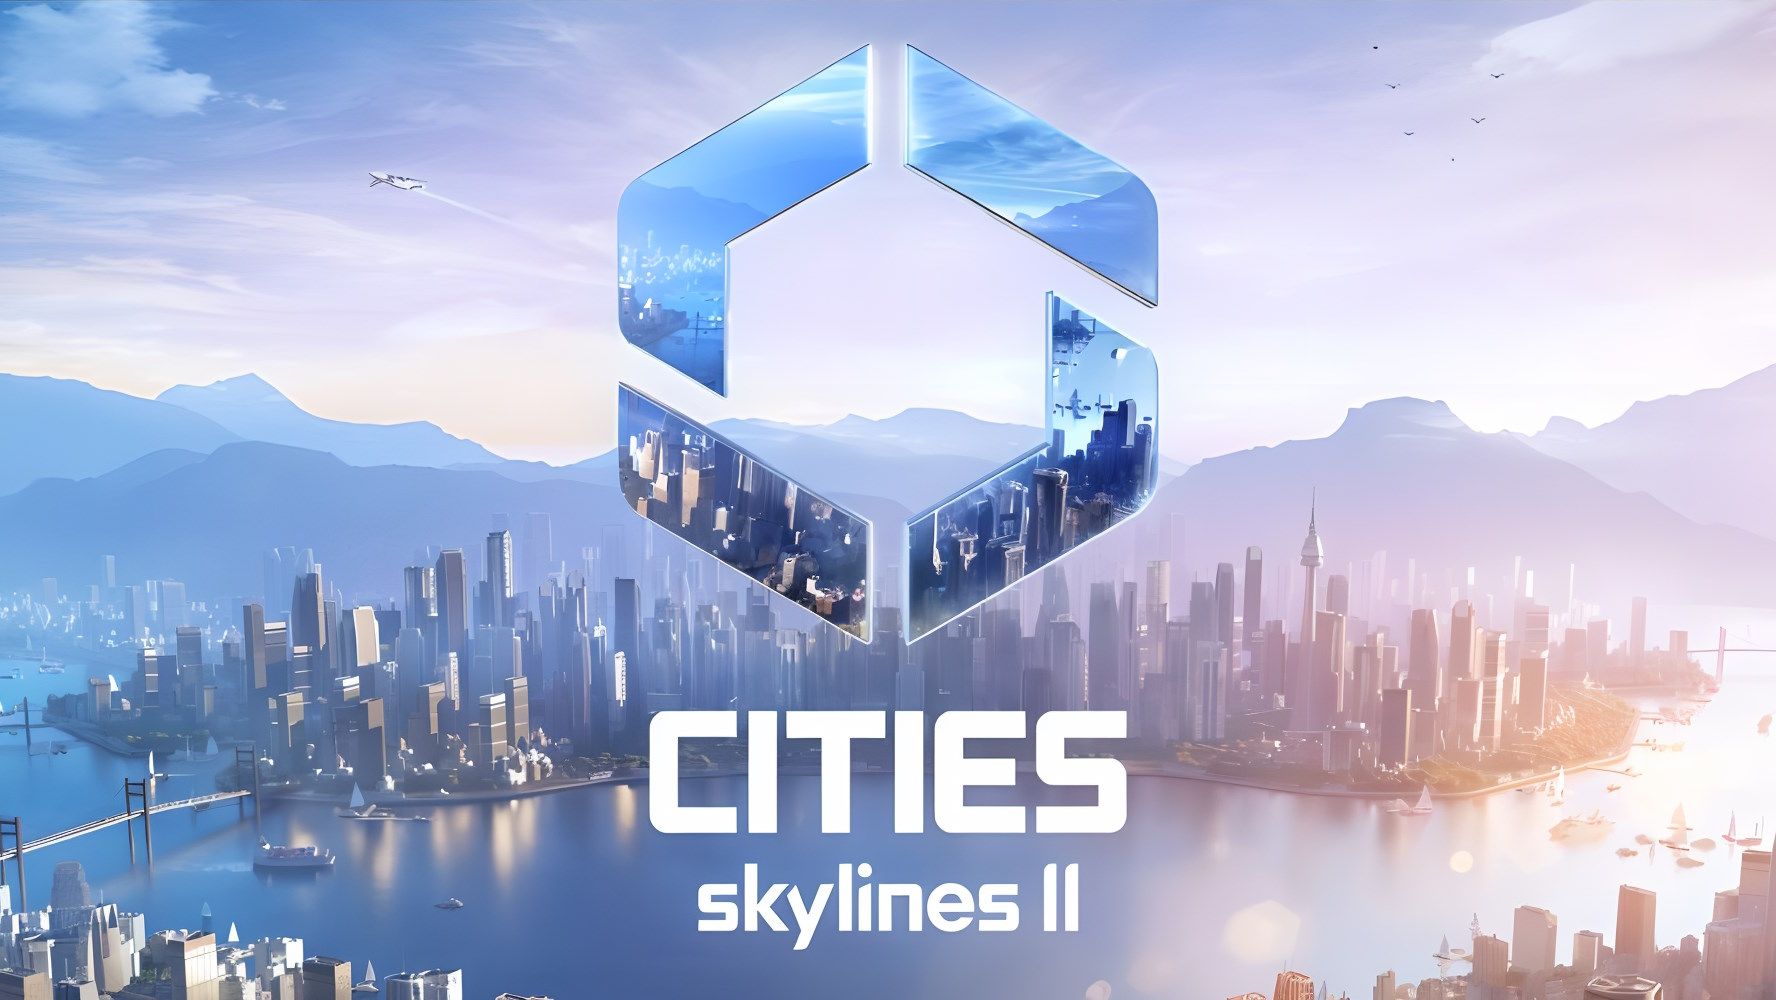 Cities Skylines 2: Entwickler sprechen über ihre Ambitionen, einen  Multiplayer und mehr